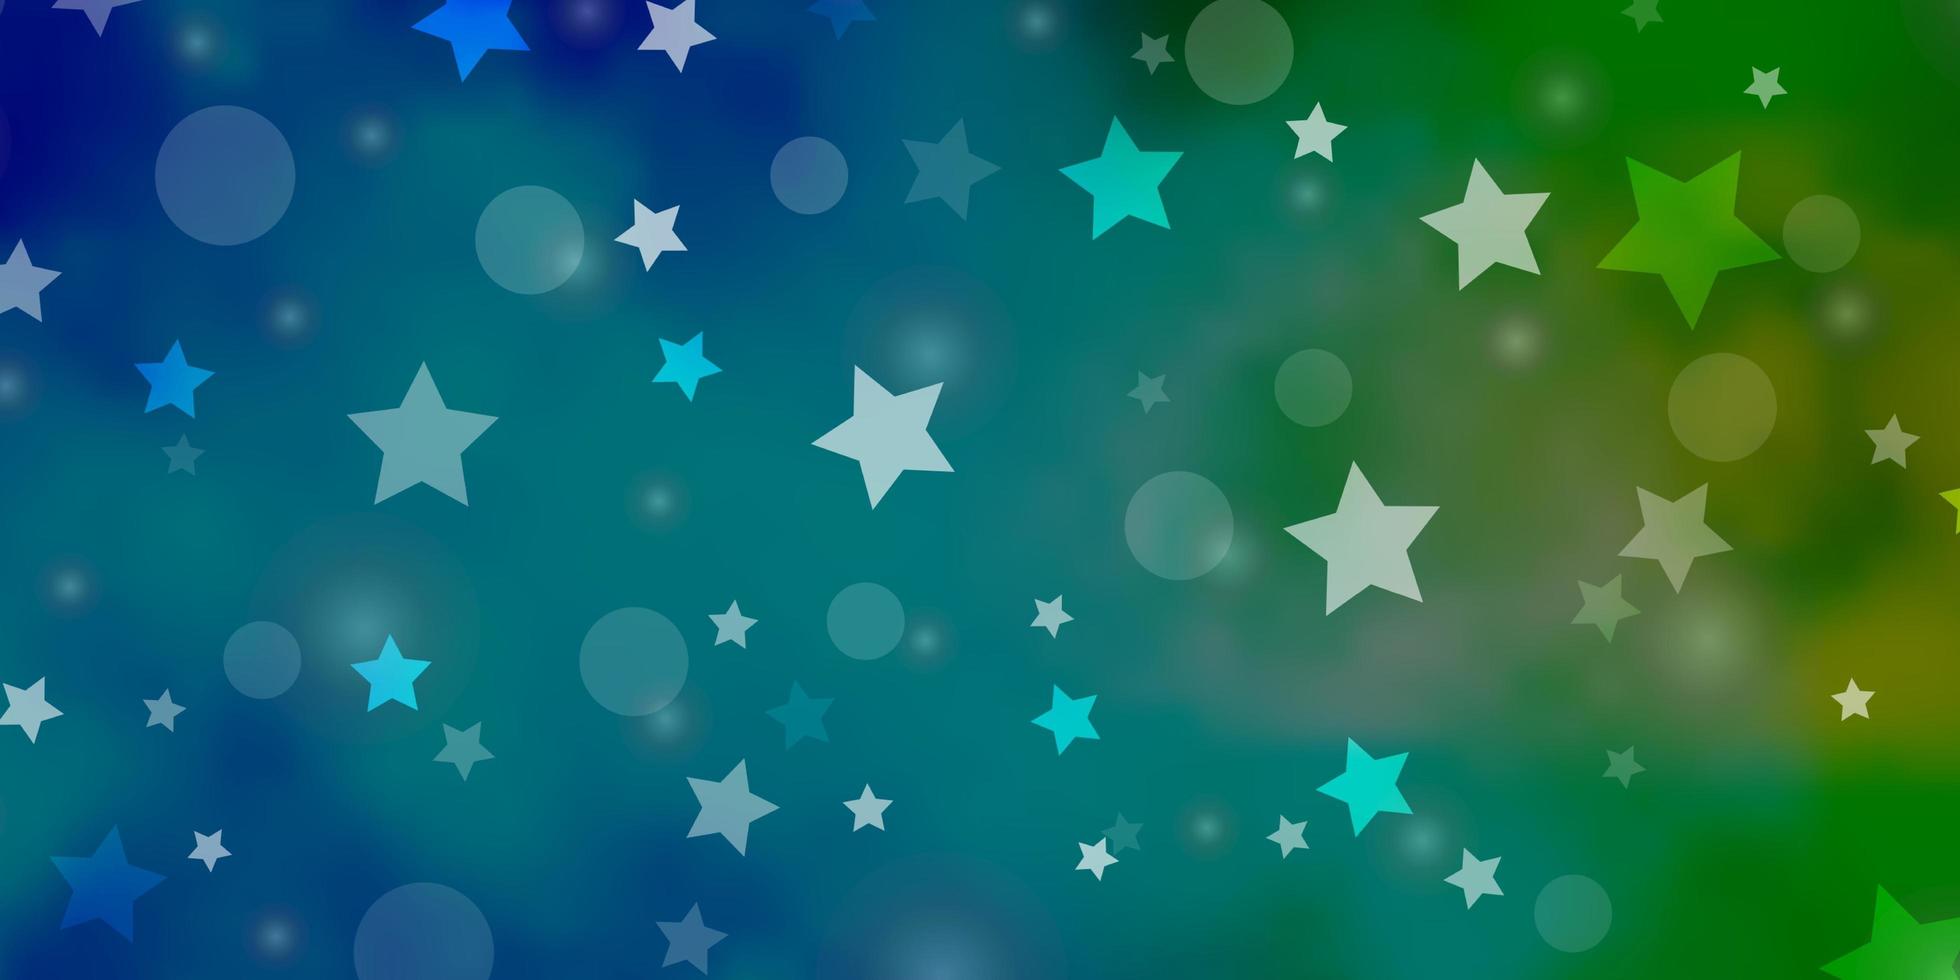 ljusblå, grön vektormall med cirklar, stjärnor. abstrakt illustration med färgglada fläckar, stjärnor. mall för visitkort, webbplatser. vektor